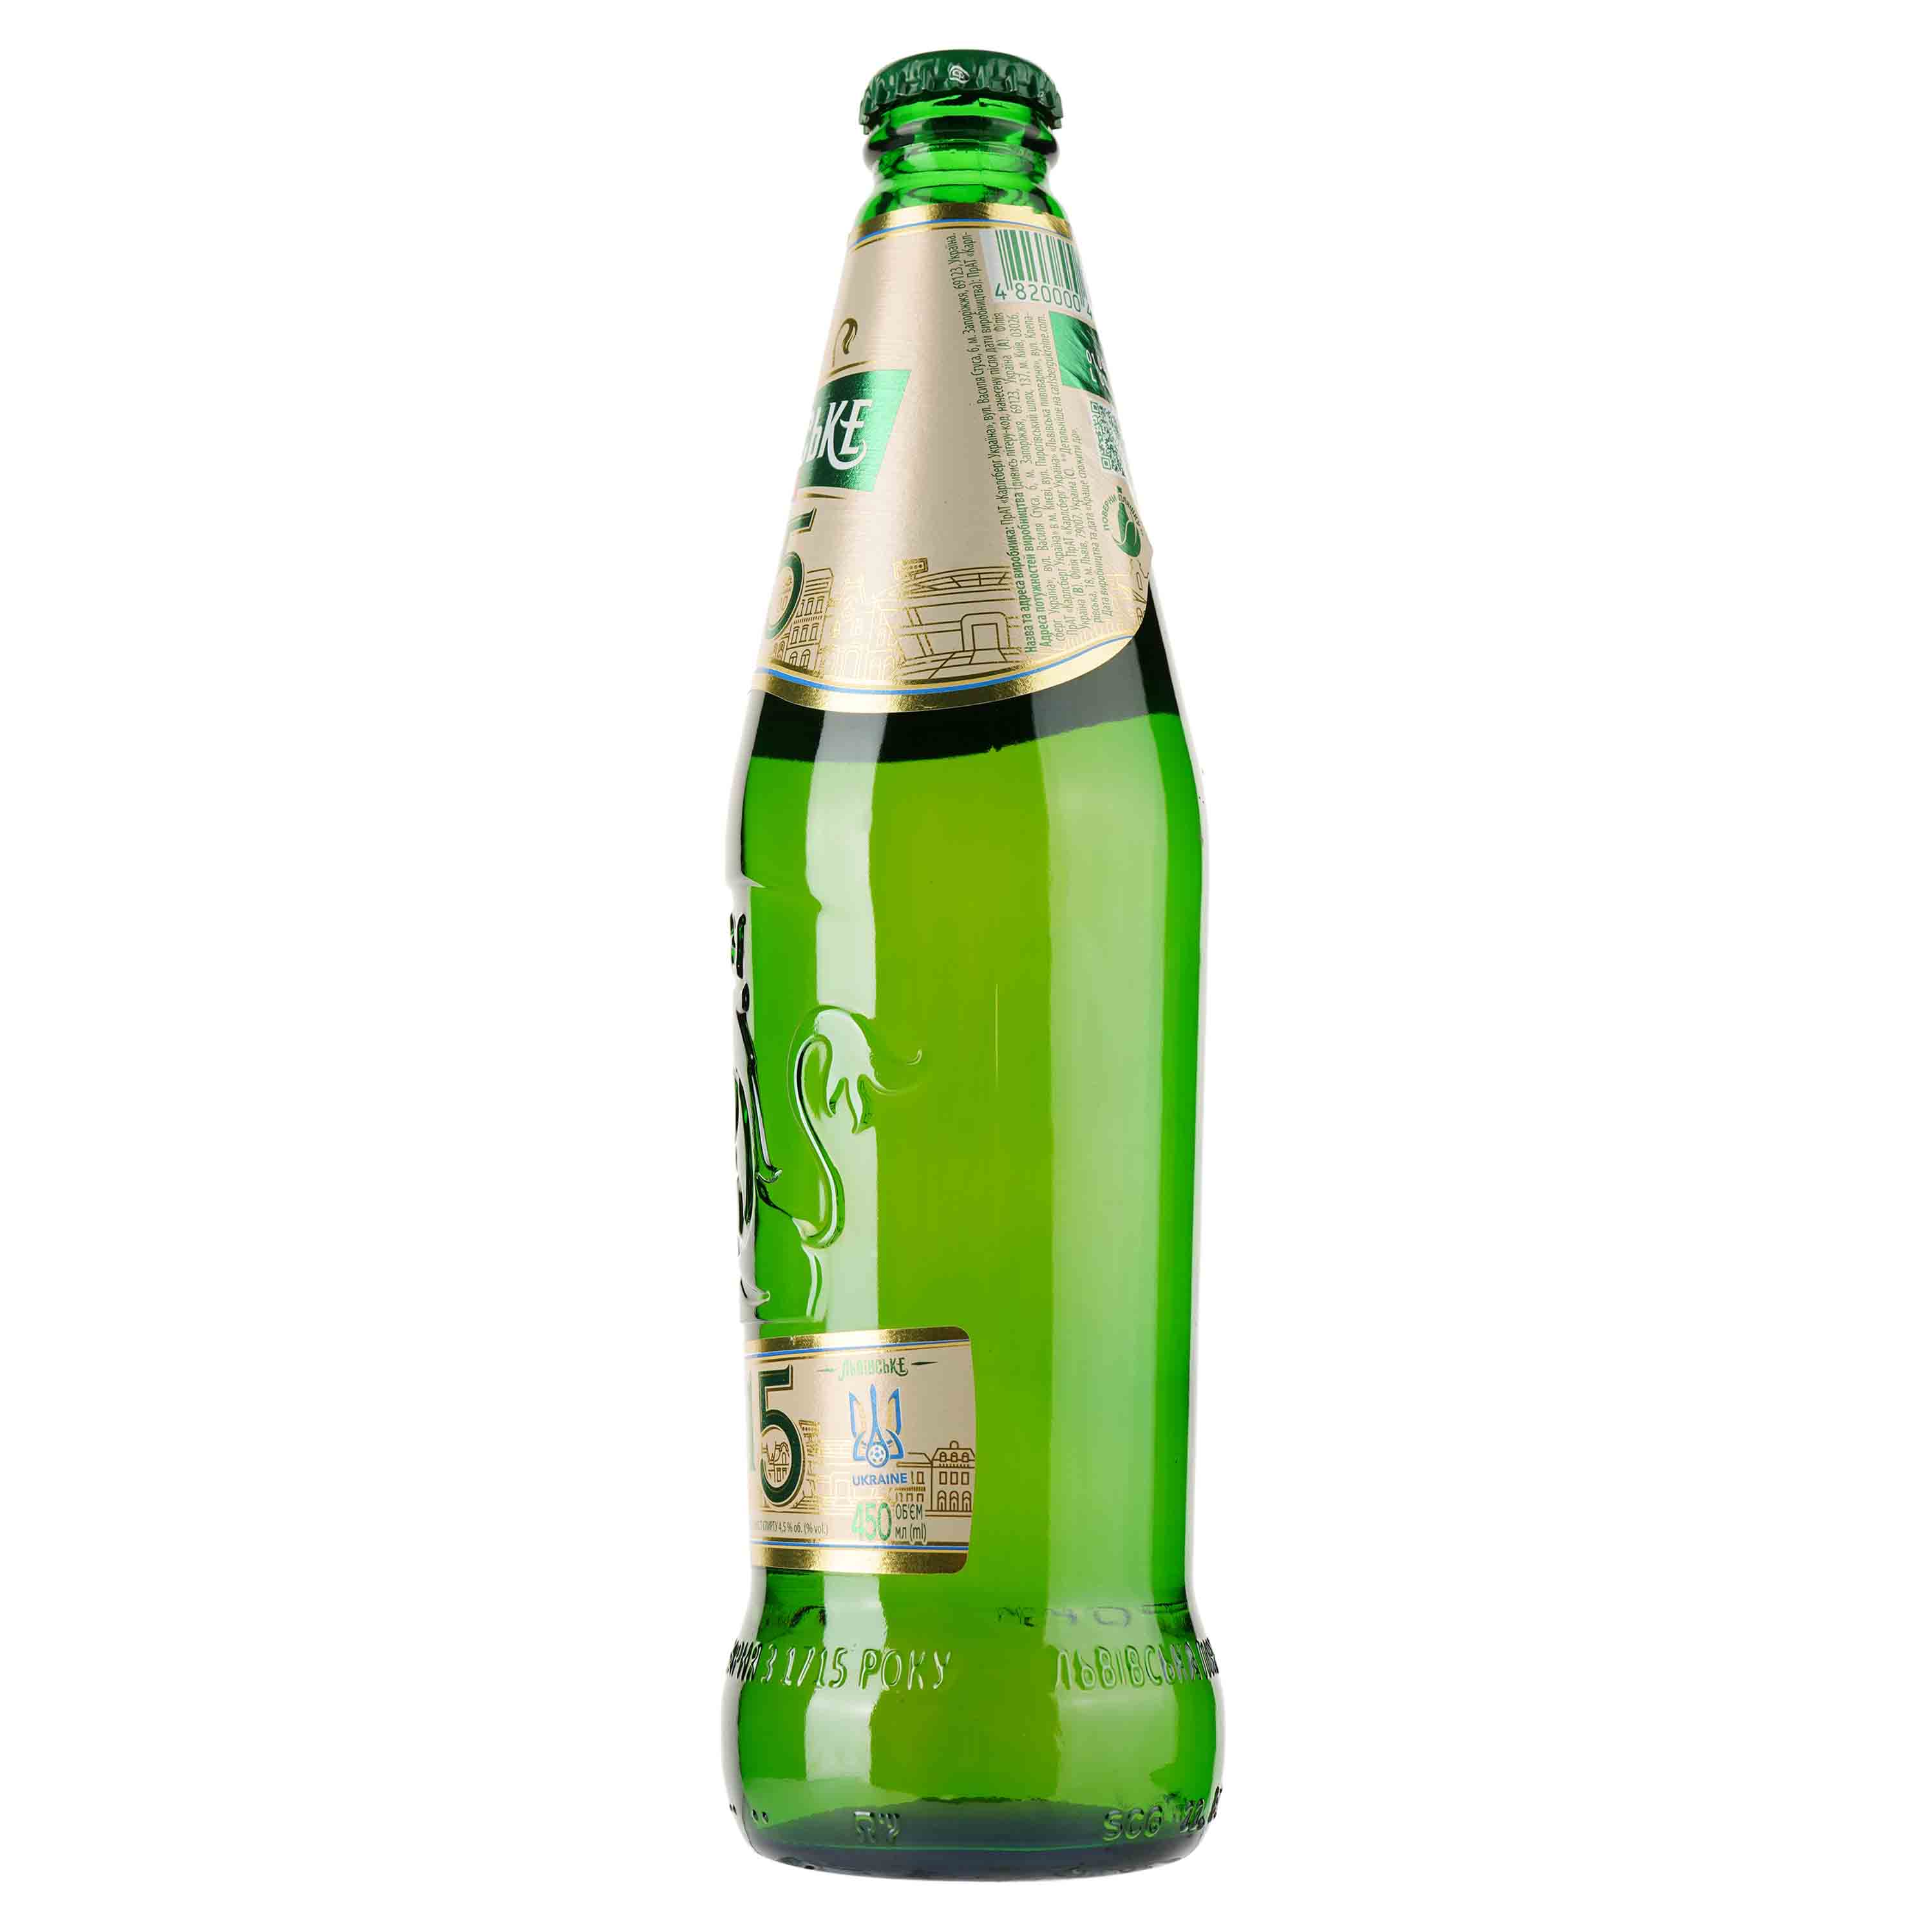 Пиво Львівське 1715, светлое, 4,5%, 0,45 л (927578) - фото 2